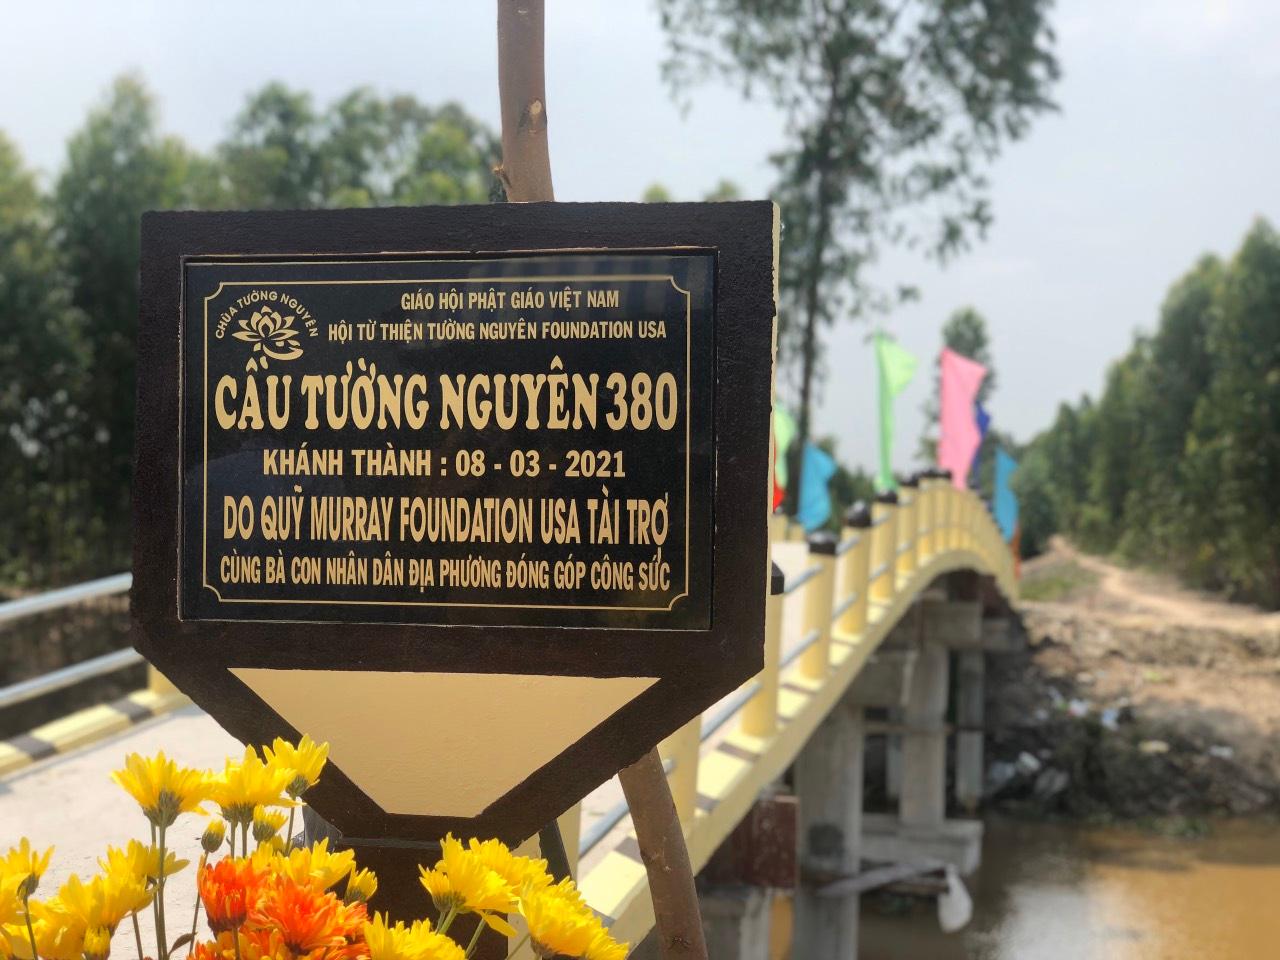 Hội Từ thiện Tường Nguyên khánh thành 3 cầu nông thôn tại Long An, Tiền Giang ảnh 1